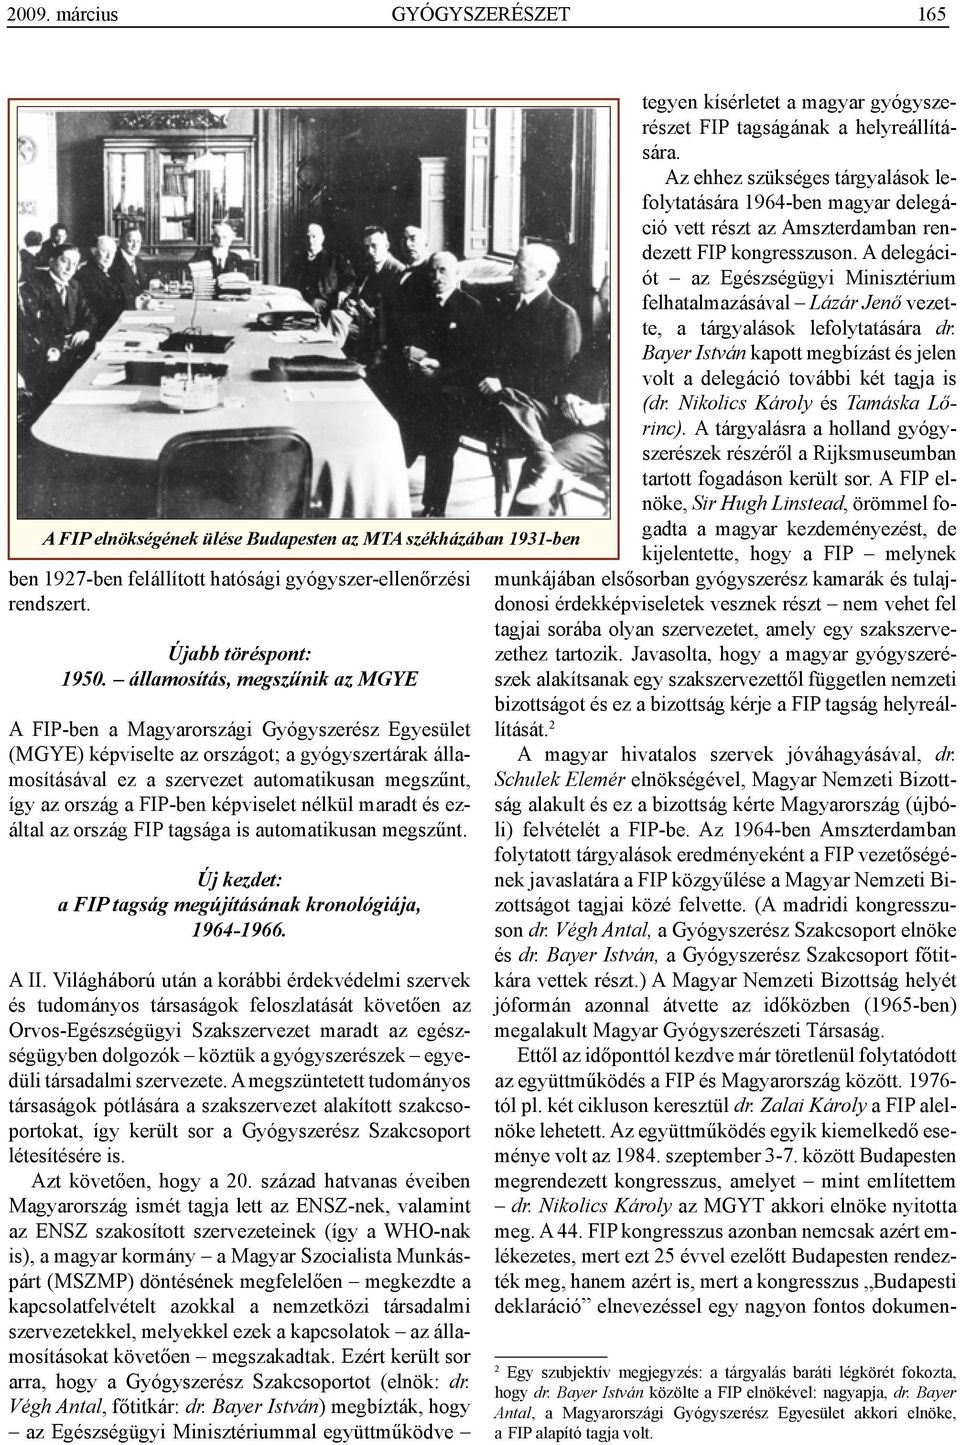 FIP-ben képviselet nélkül maradt és ezáltal az ország FIP tagsága is automatikusan megszűnt. Új kezdet: a FIP tagság megújításának kronológiája, 1964-1966. A II.